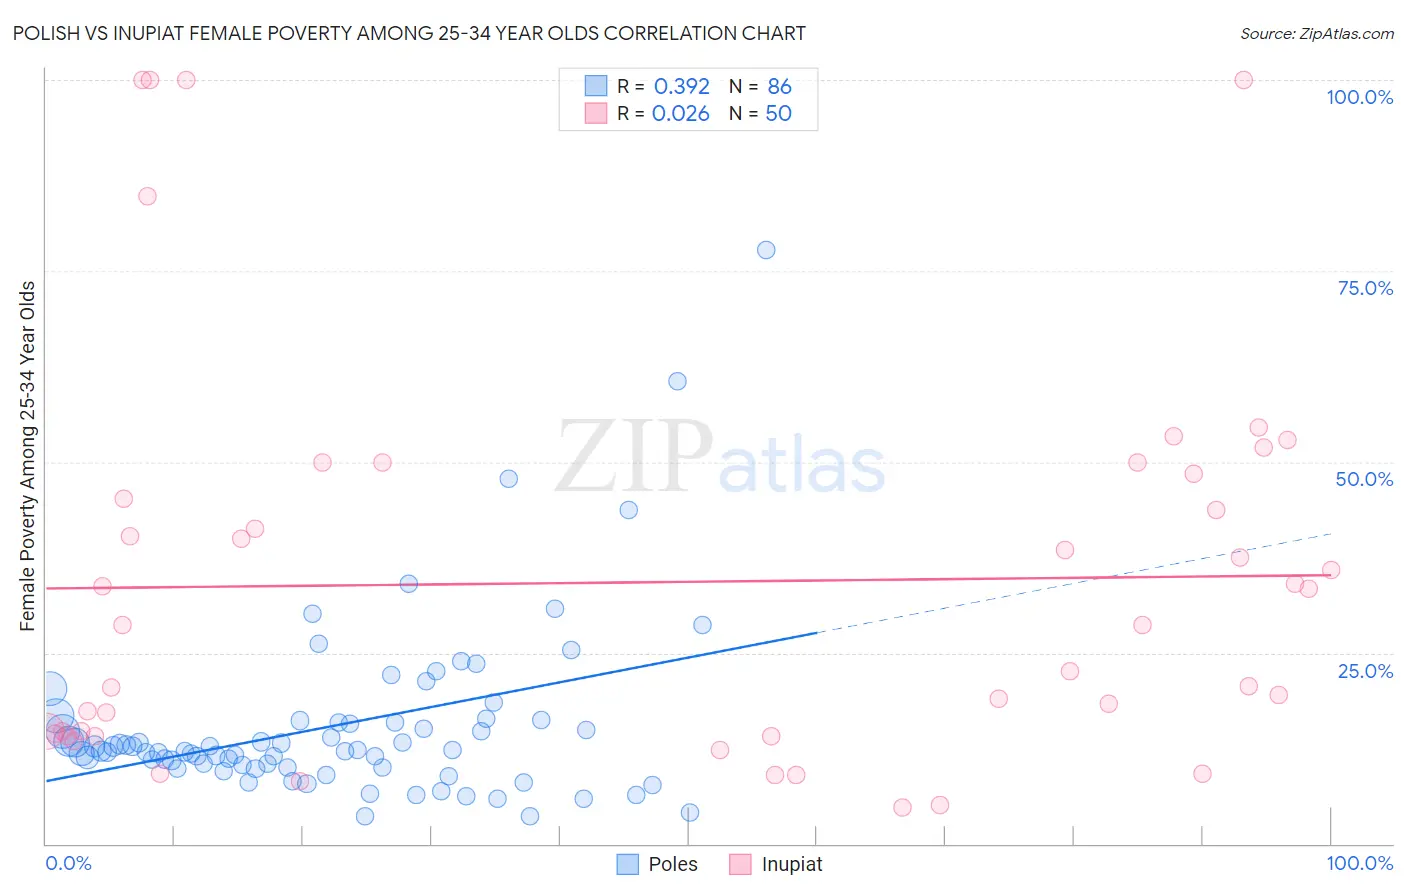 Polish vs Inupiat Female Poverty Among 25-34 Year Olds